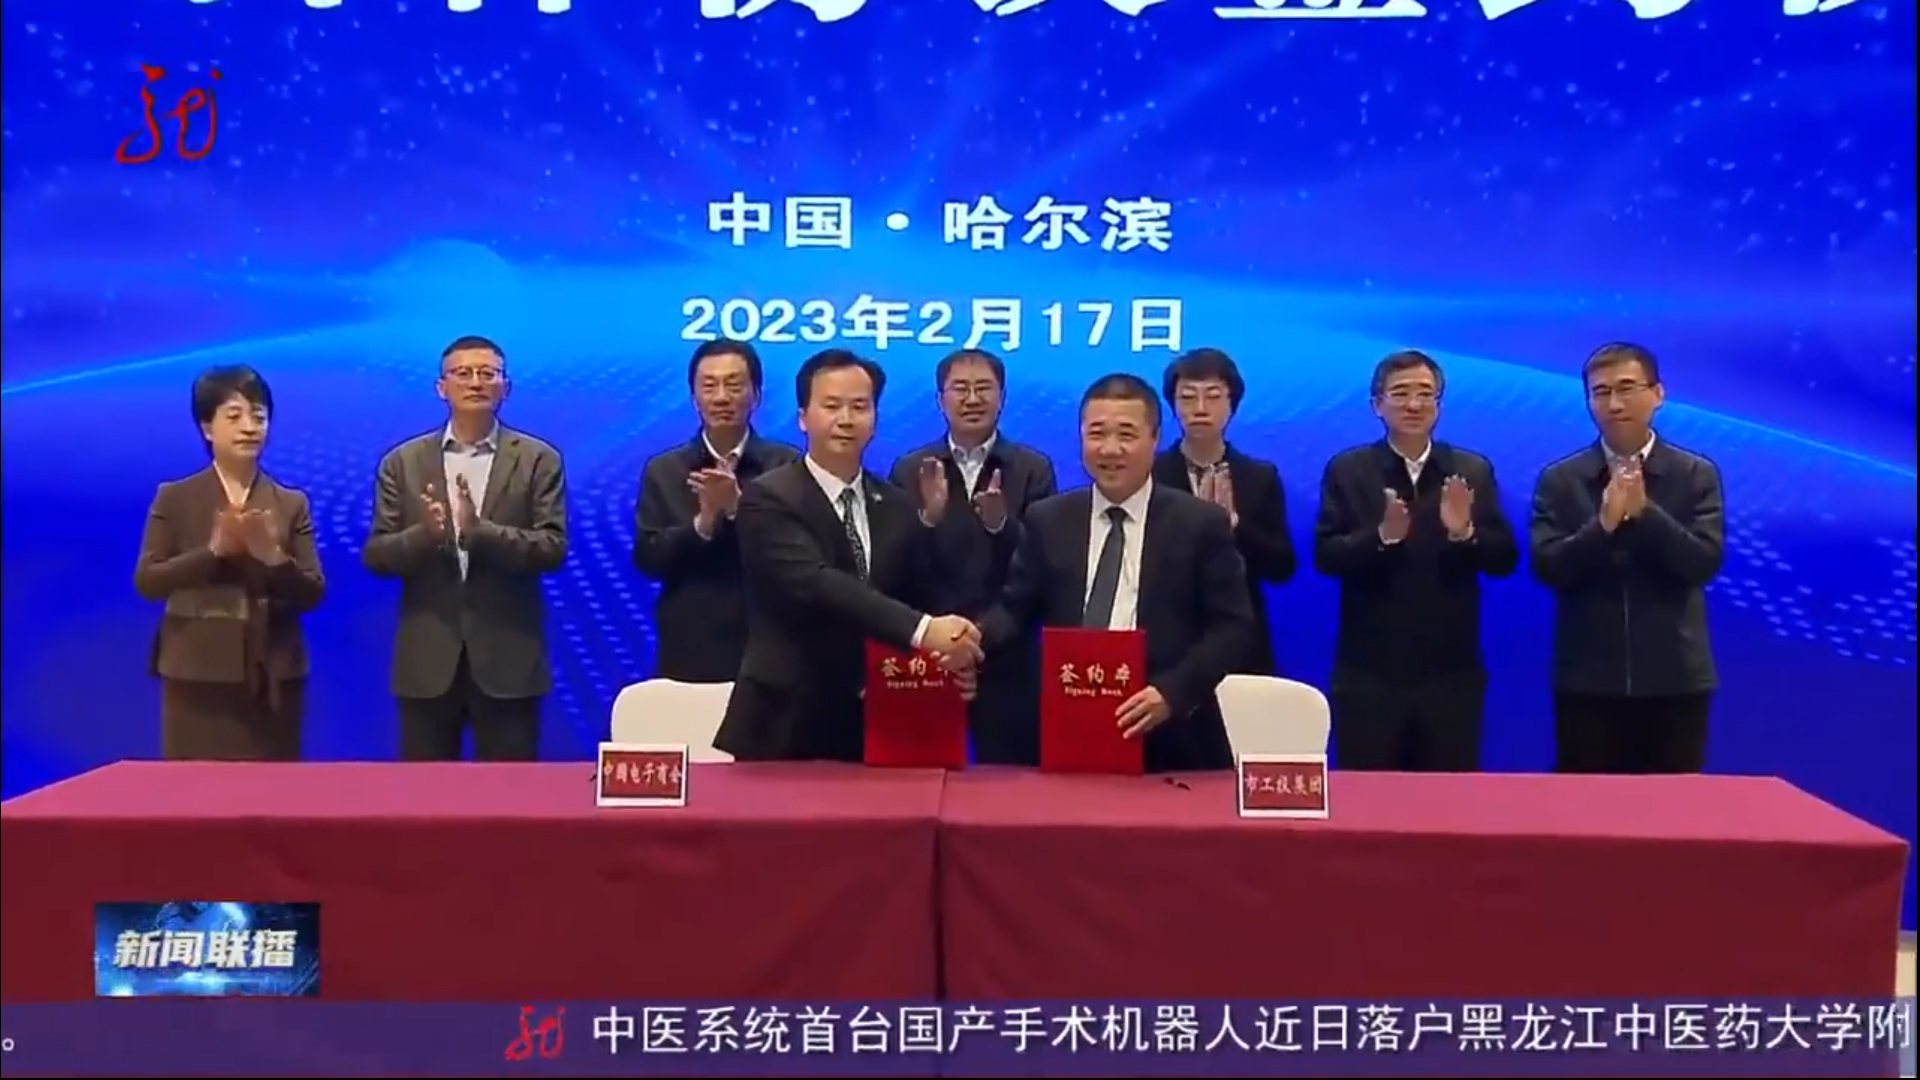 數字賦能興產業 點燃發展新引擎 ——中國電子商會與工投集團簽署戰略合作協議